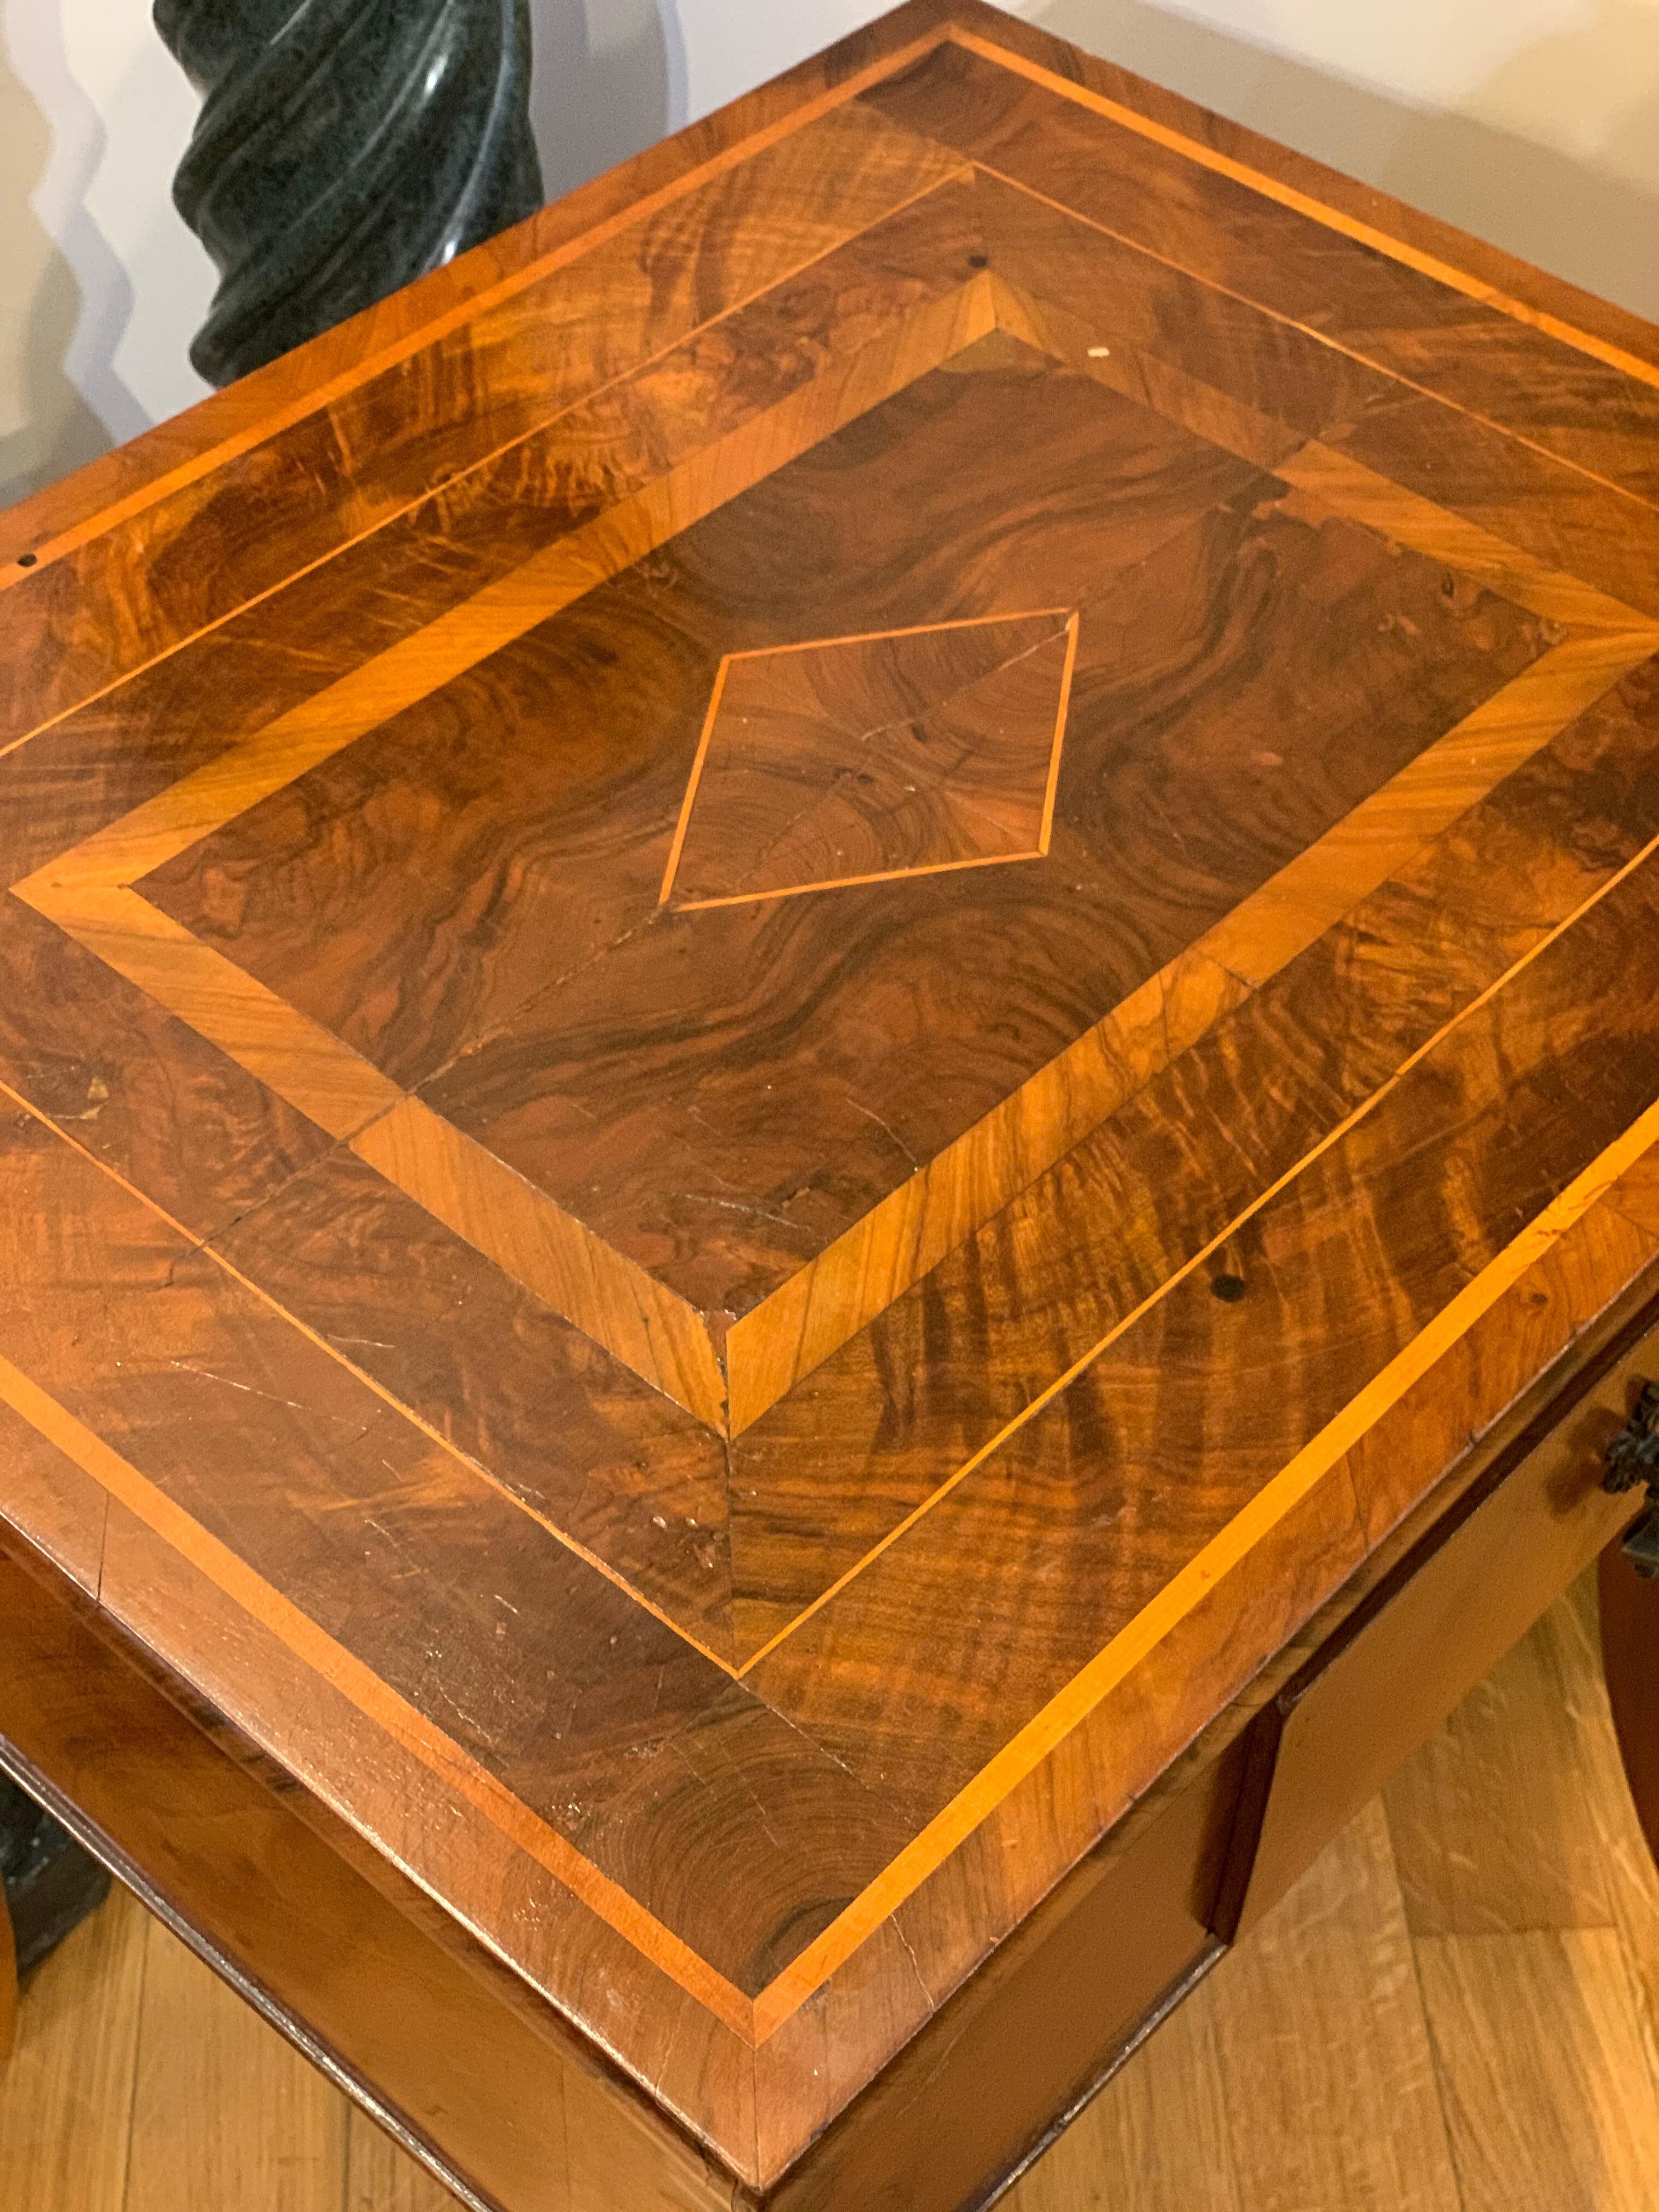 Elegantes Directoire-Tischchen mit Intarsien aus verschiedenen Fruchtessenzen mit geometrischen Motiven. Typische Säbelkeule aus der Übergangszeit zwischen Ludwig XVI. und dem Kaiserreich, vor allem in der Toskana. Der Tisch hat eine sehr